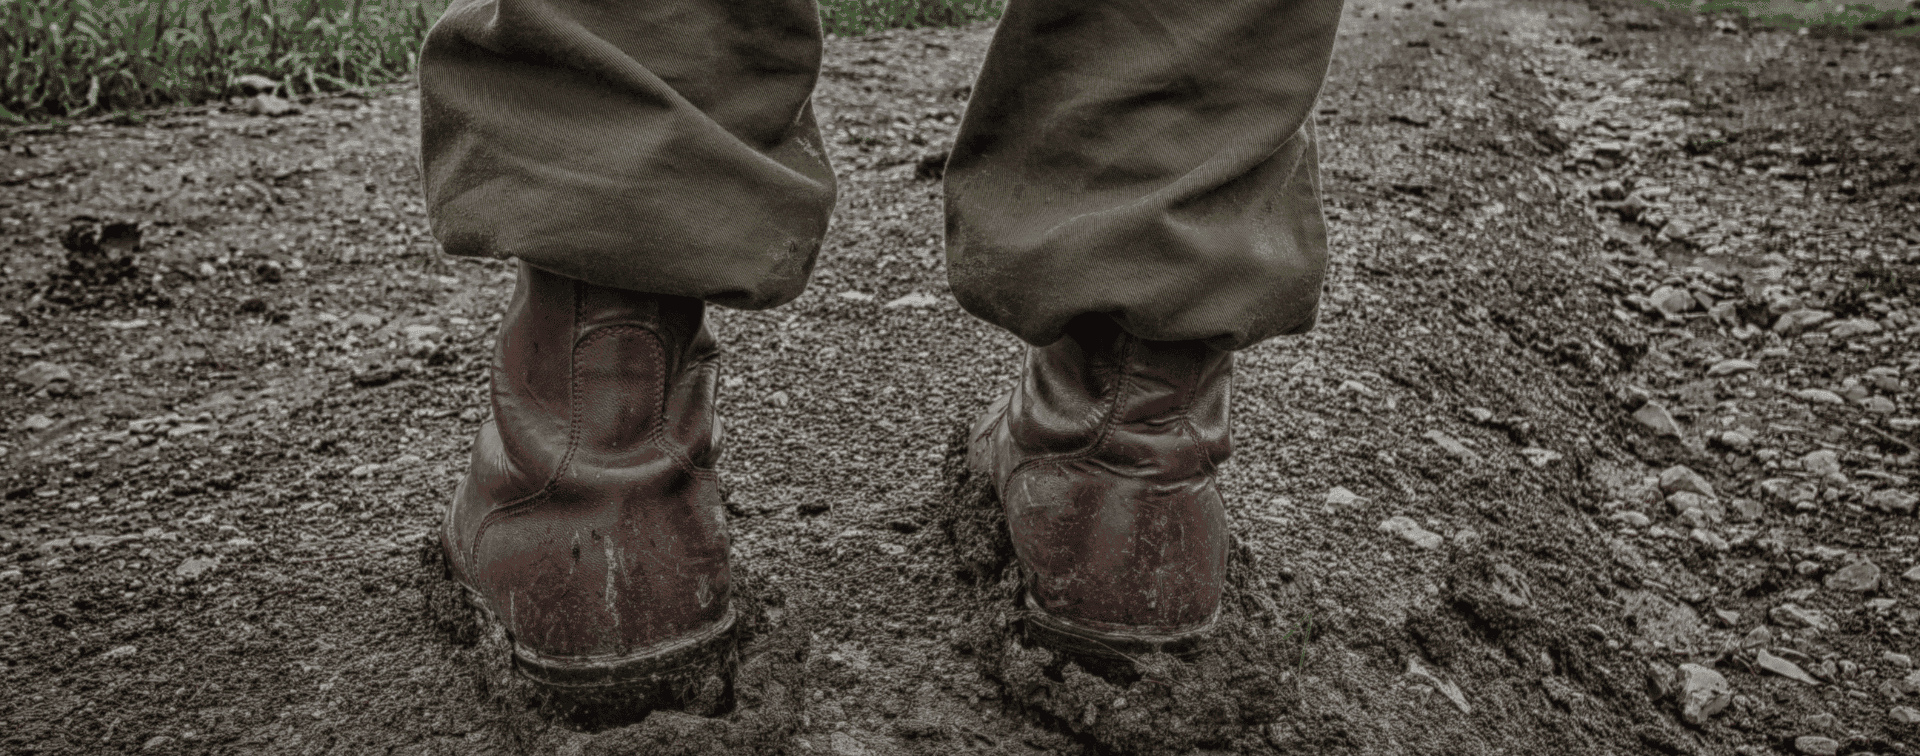 Chaussures Rangers Militaire dans la boue